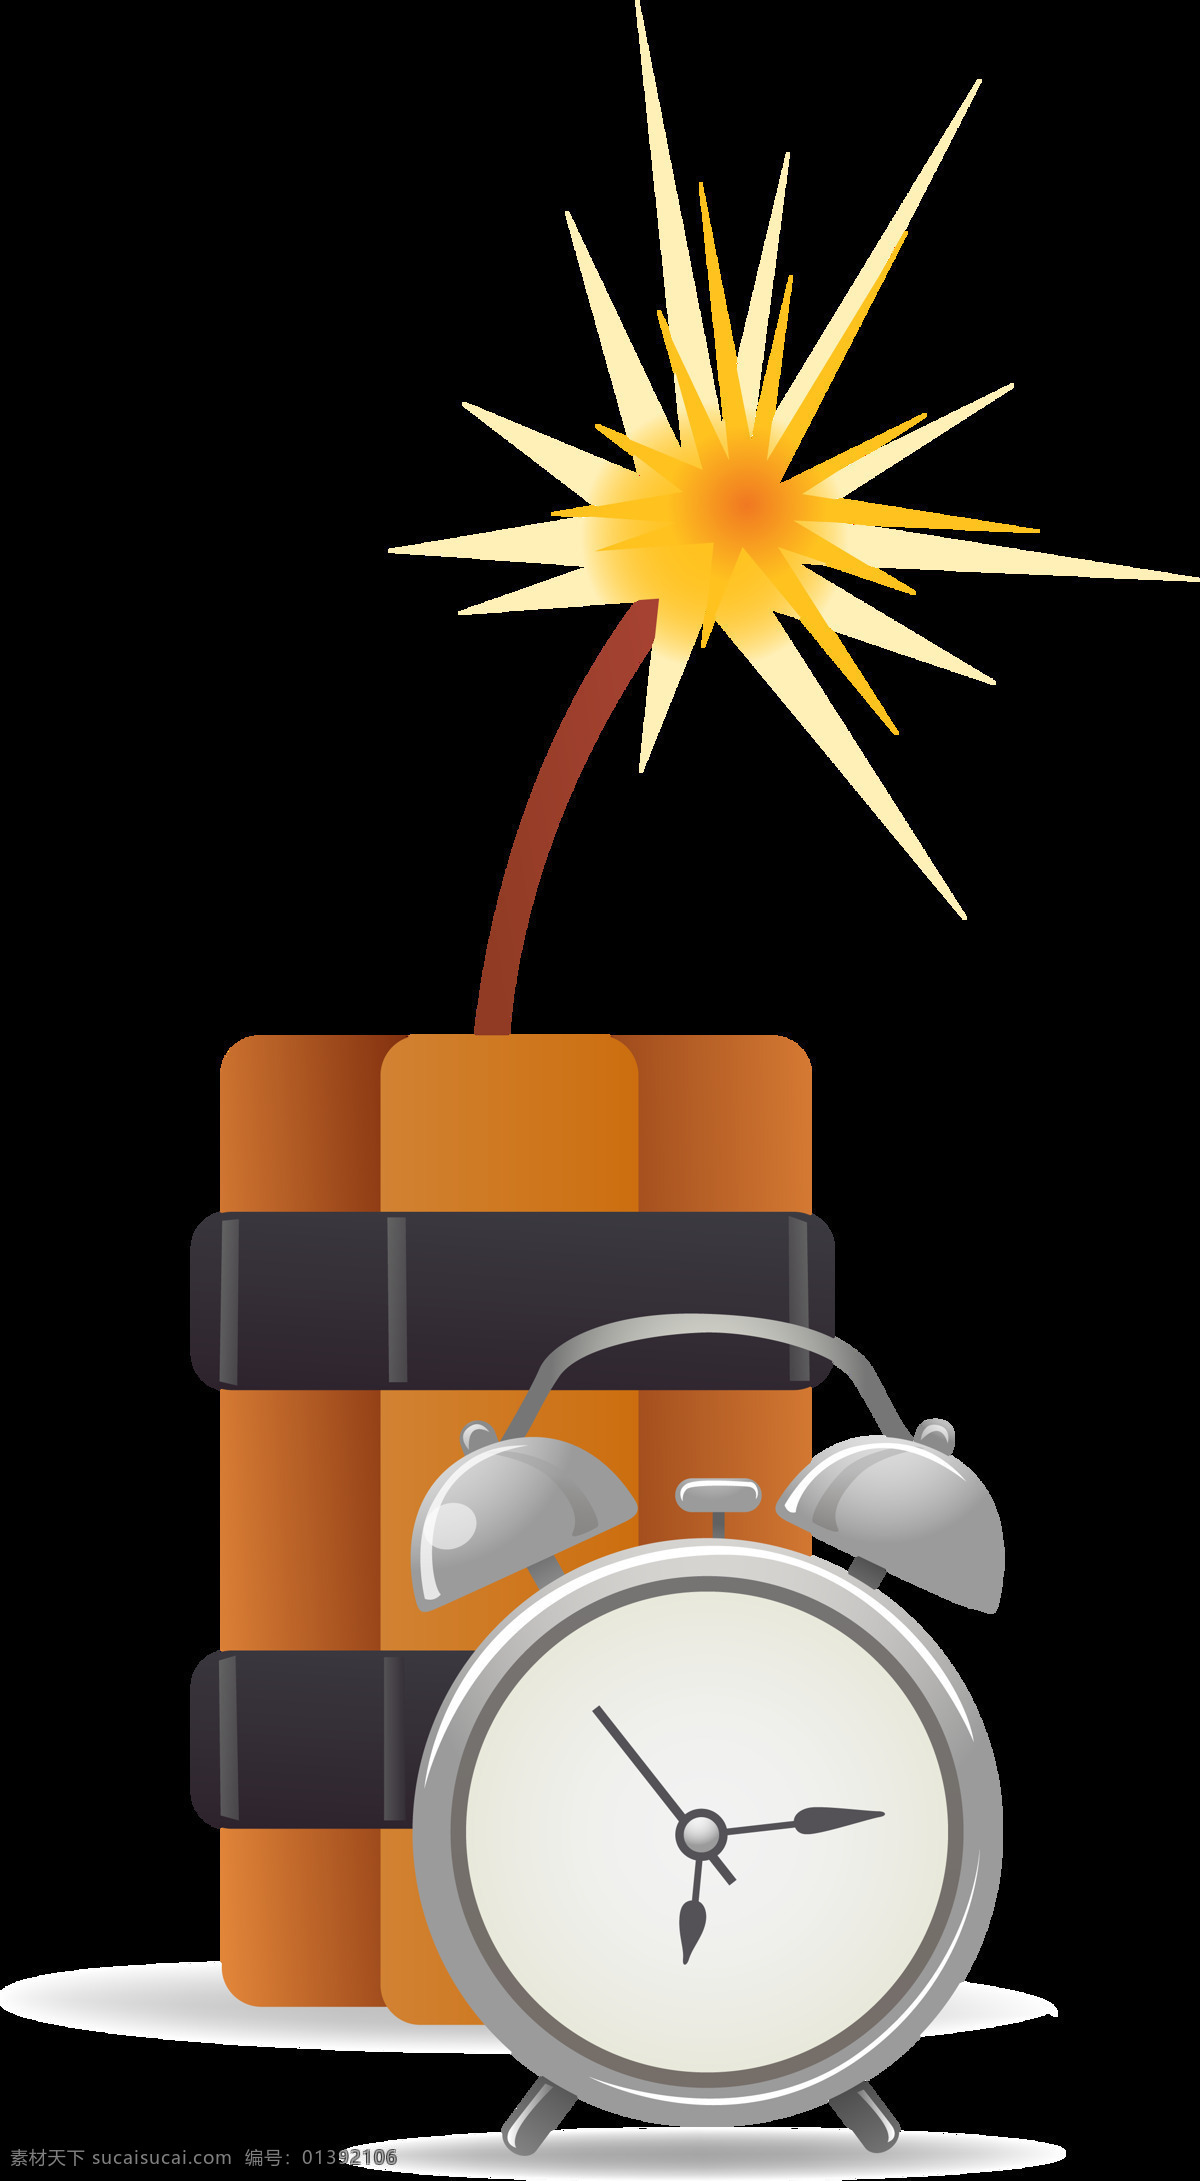 定时炸弹 图标素材 炸弹 定时 火花 闹钟 其他图标 标志图标